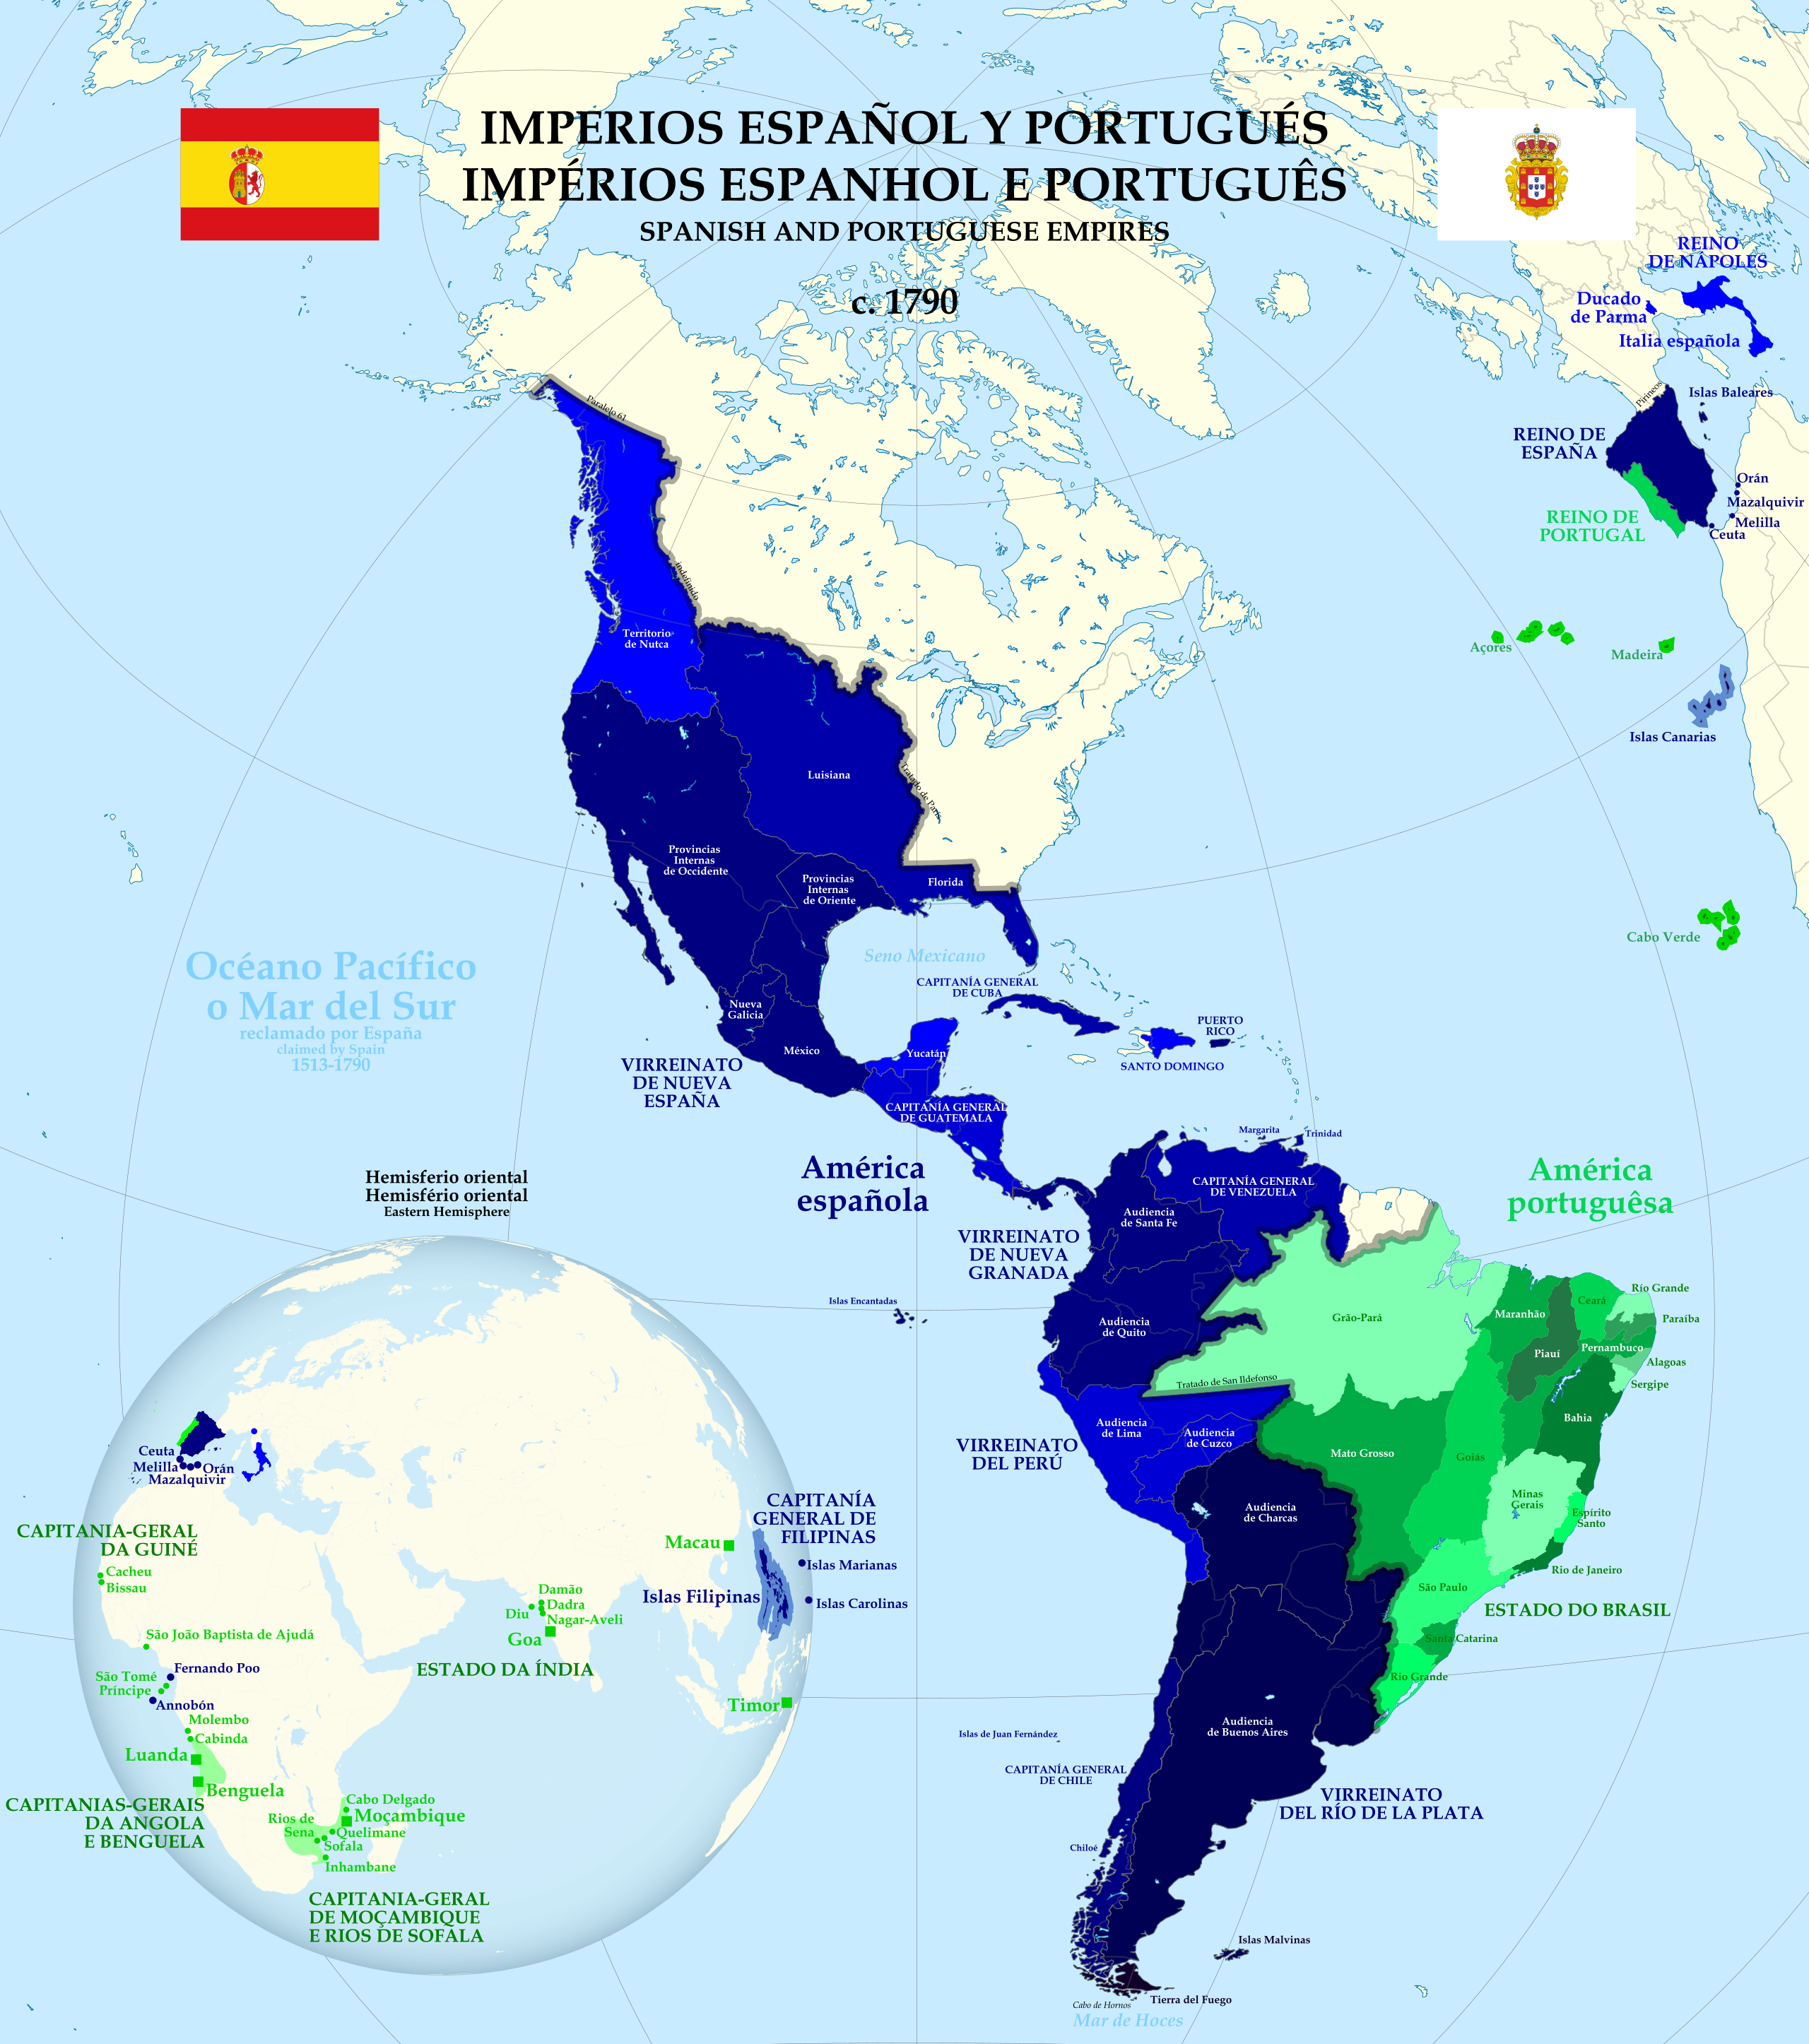 Imperios españoles y portugueses ca. 1790.